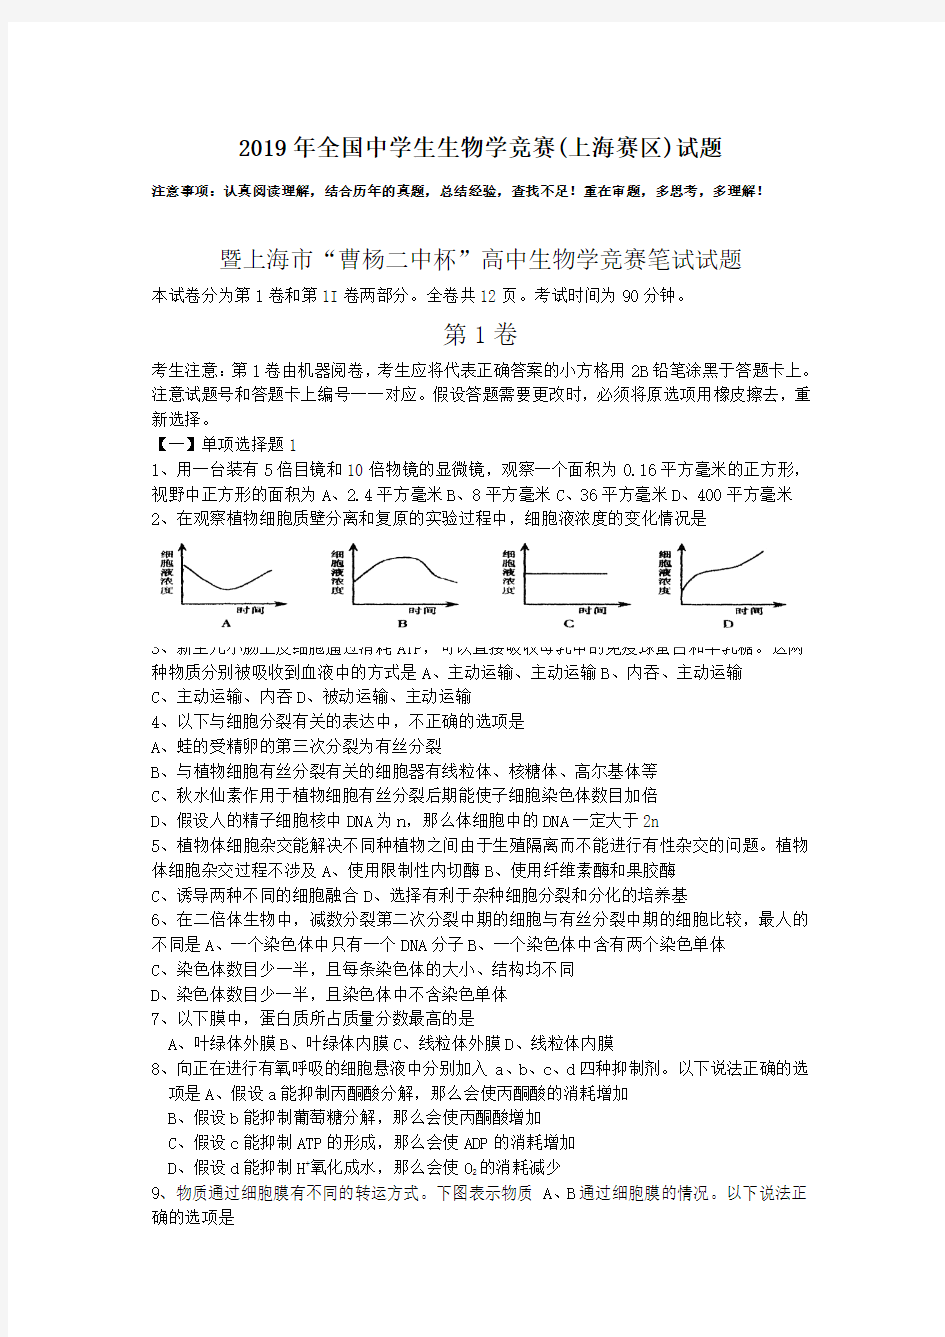 2019年全国中学生生物学竞赛(上海赛区)试题